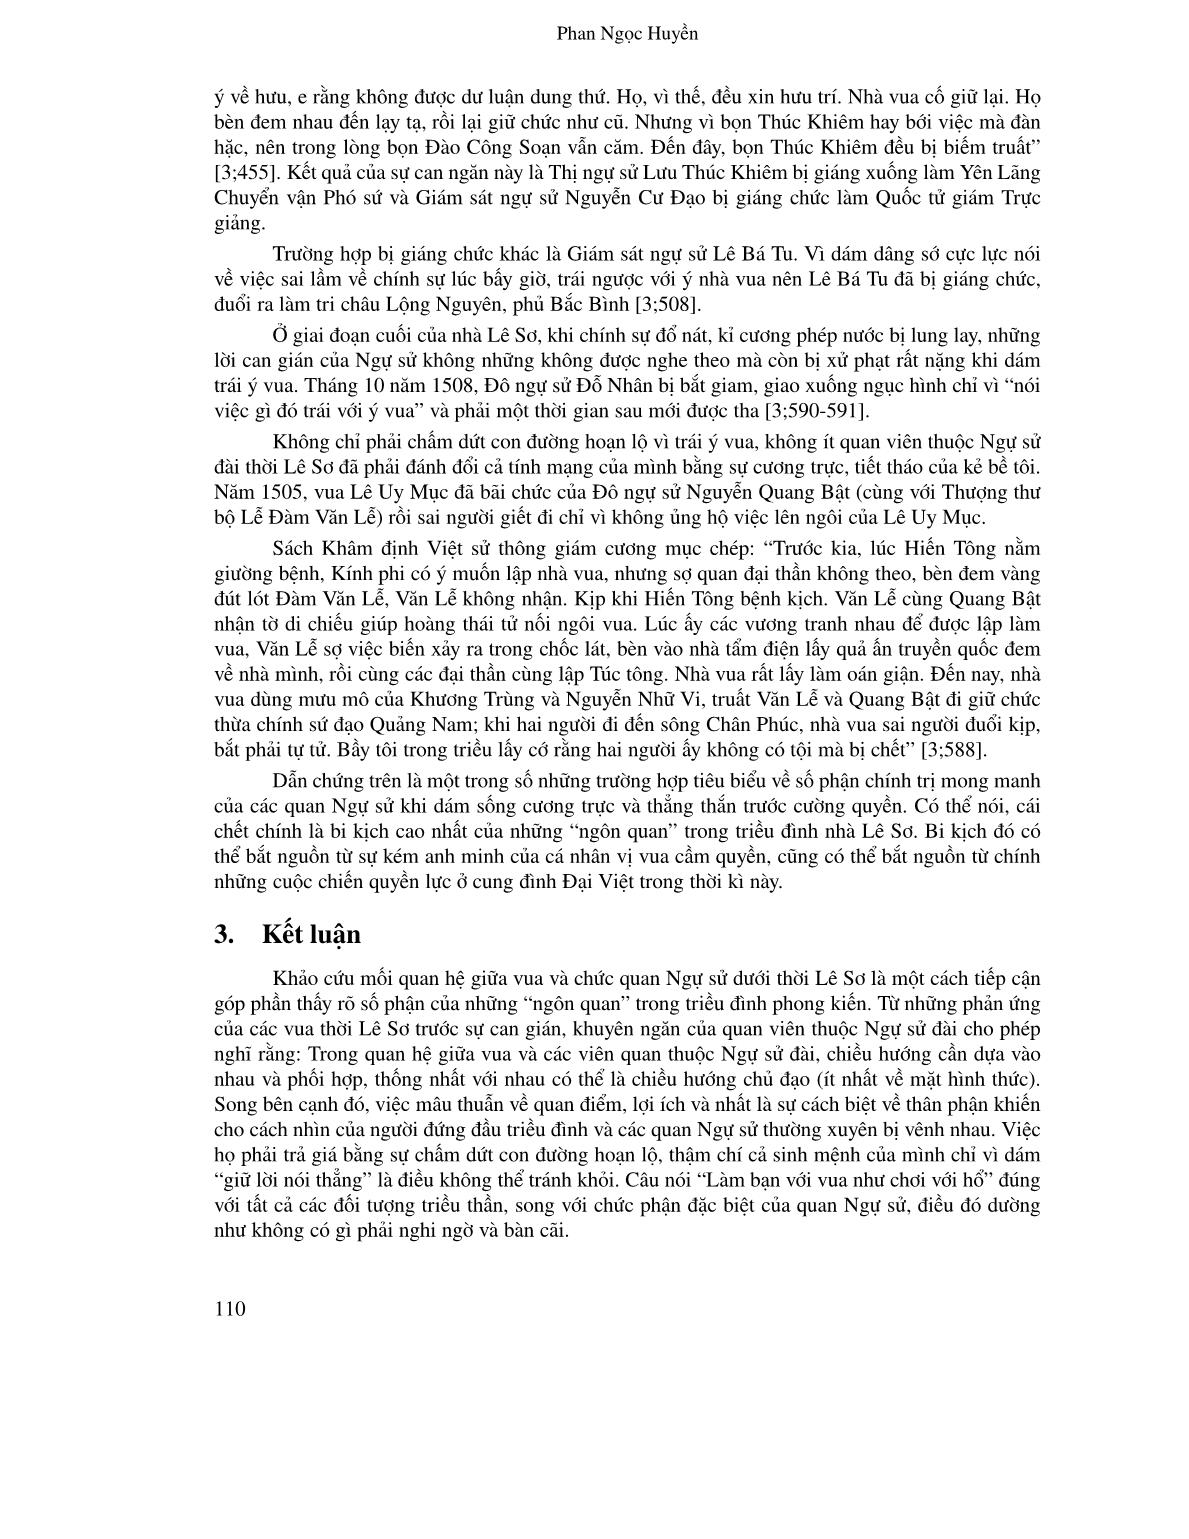 Số phận của “ngôn quan” thời Lê Sơ: Góc nhìn từ mối quan hệ giữa vua và chức quan ngự sử trang 6